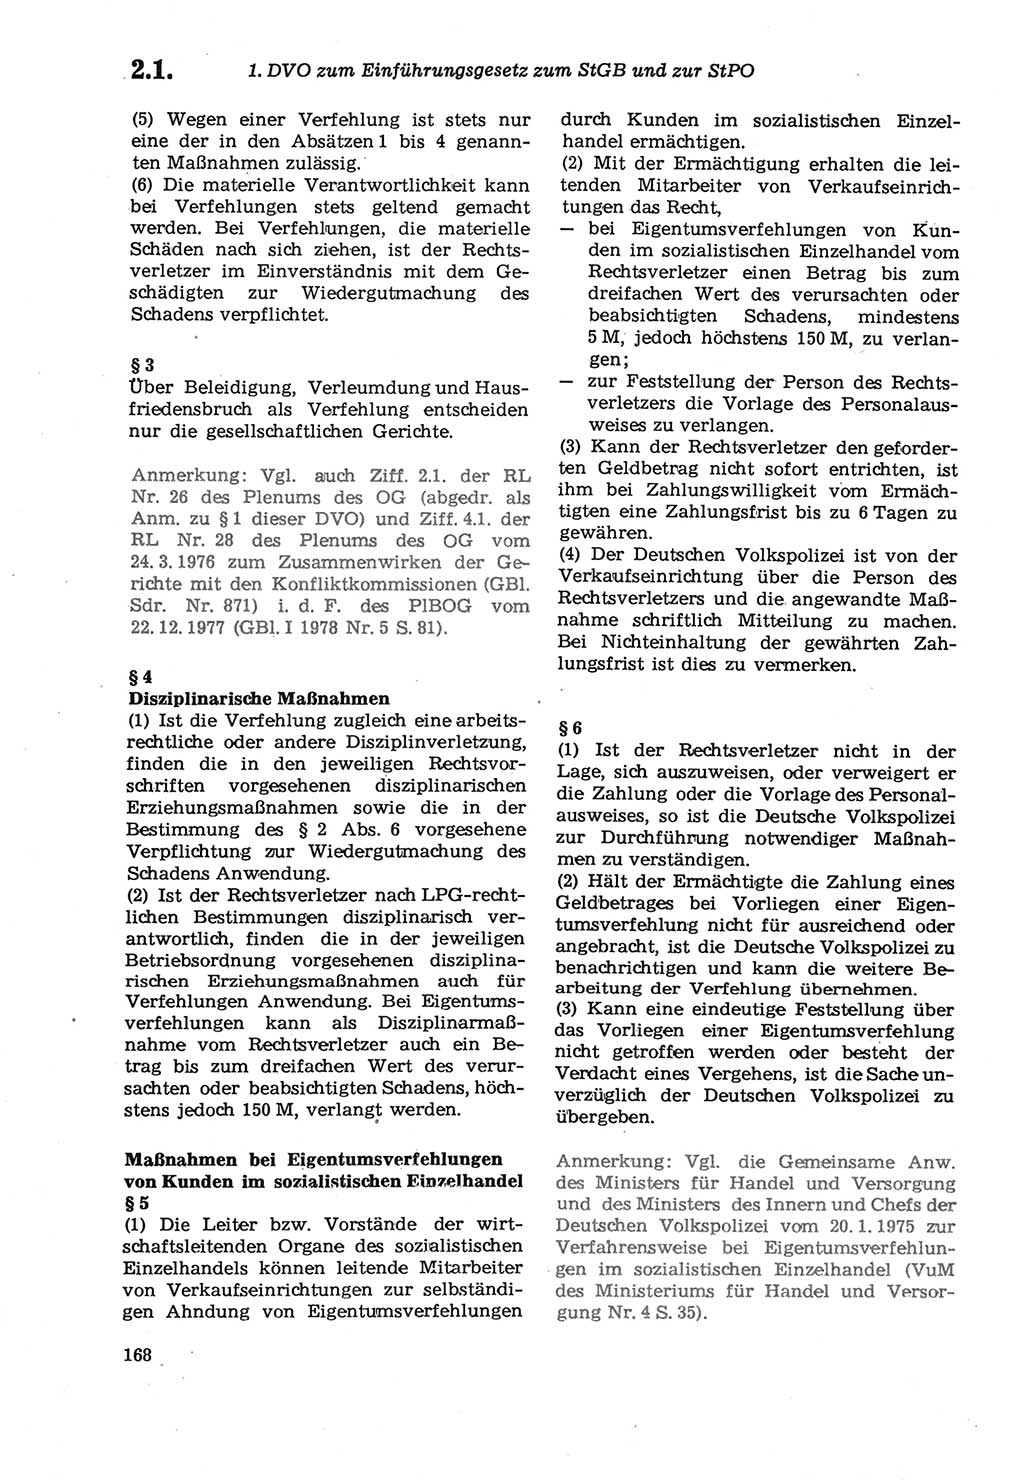 Strafprozeßordnung (StPO) der Deutschen Demokratischen Republik (DDR) sowie angrenzende Gesetze und Bestimmungen 1979, Seite 168 (StPO DDR Ges. Best. 1979, S. 168)